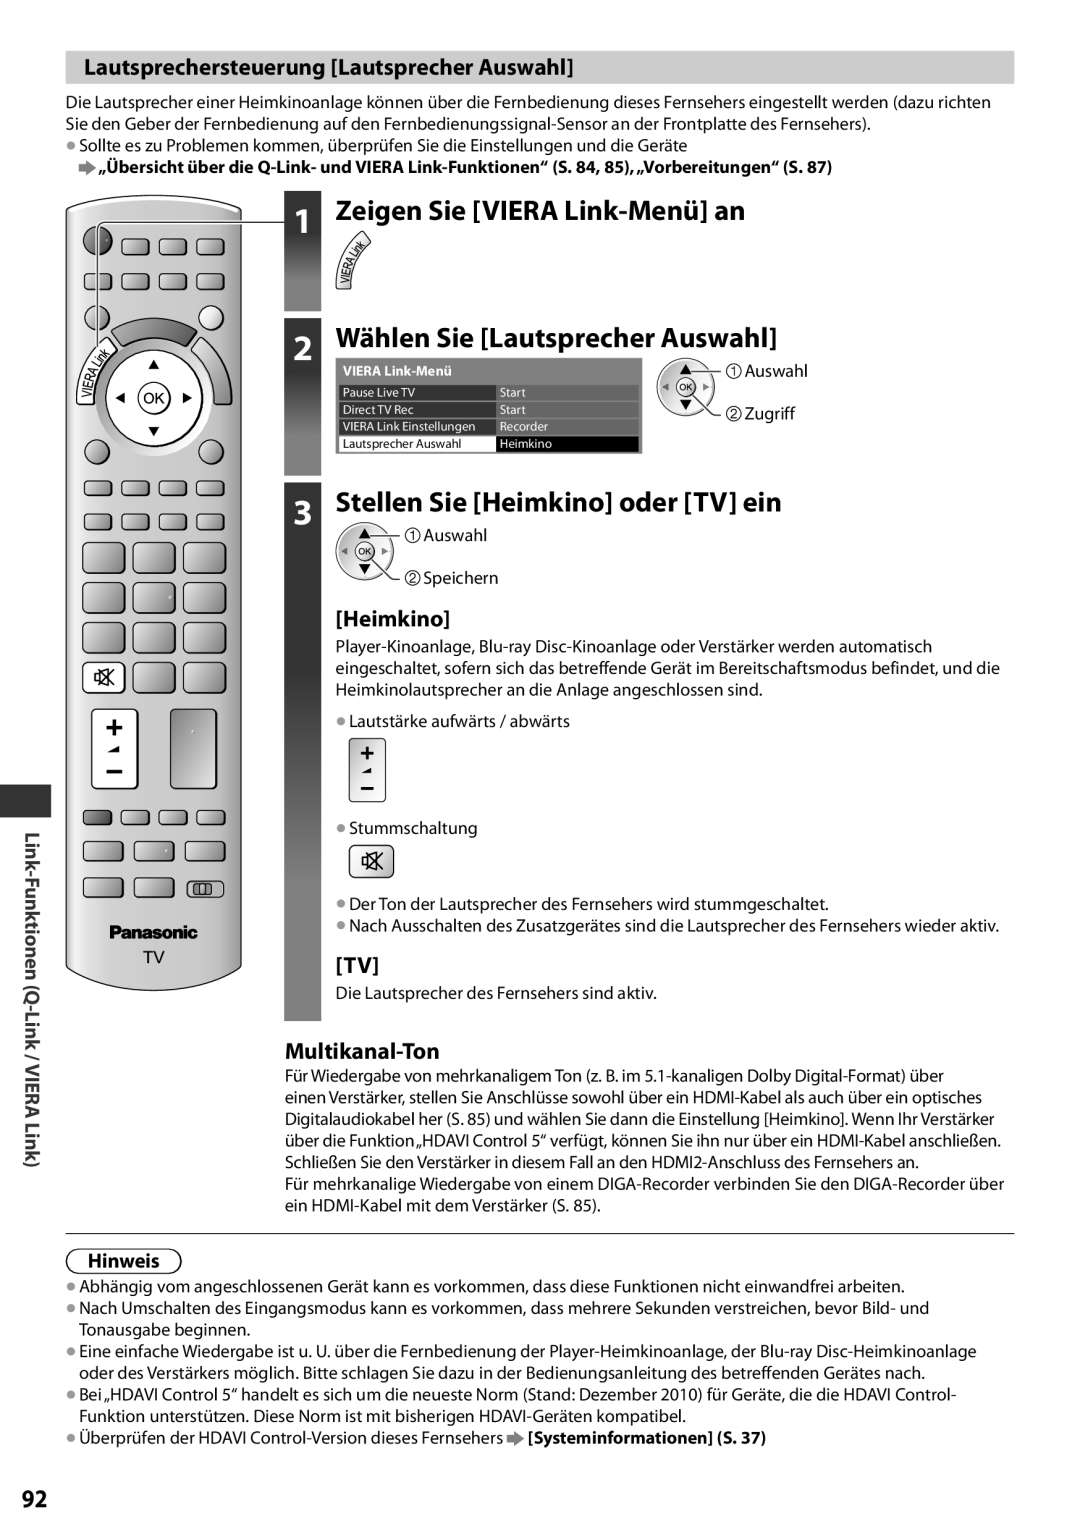 Panasonic TX-L37EF32 Wählen Sie Lautsprecher Auswahl, Stellen Sie Heimkino oder TV ein, Multikanal-Ton, Hinweis, Zugriff 